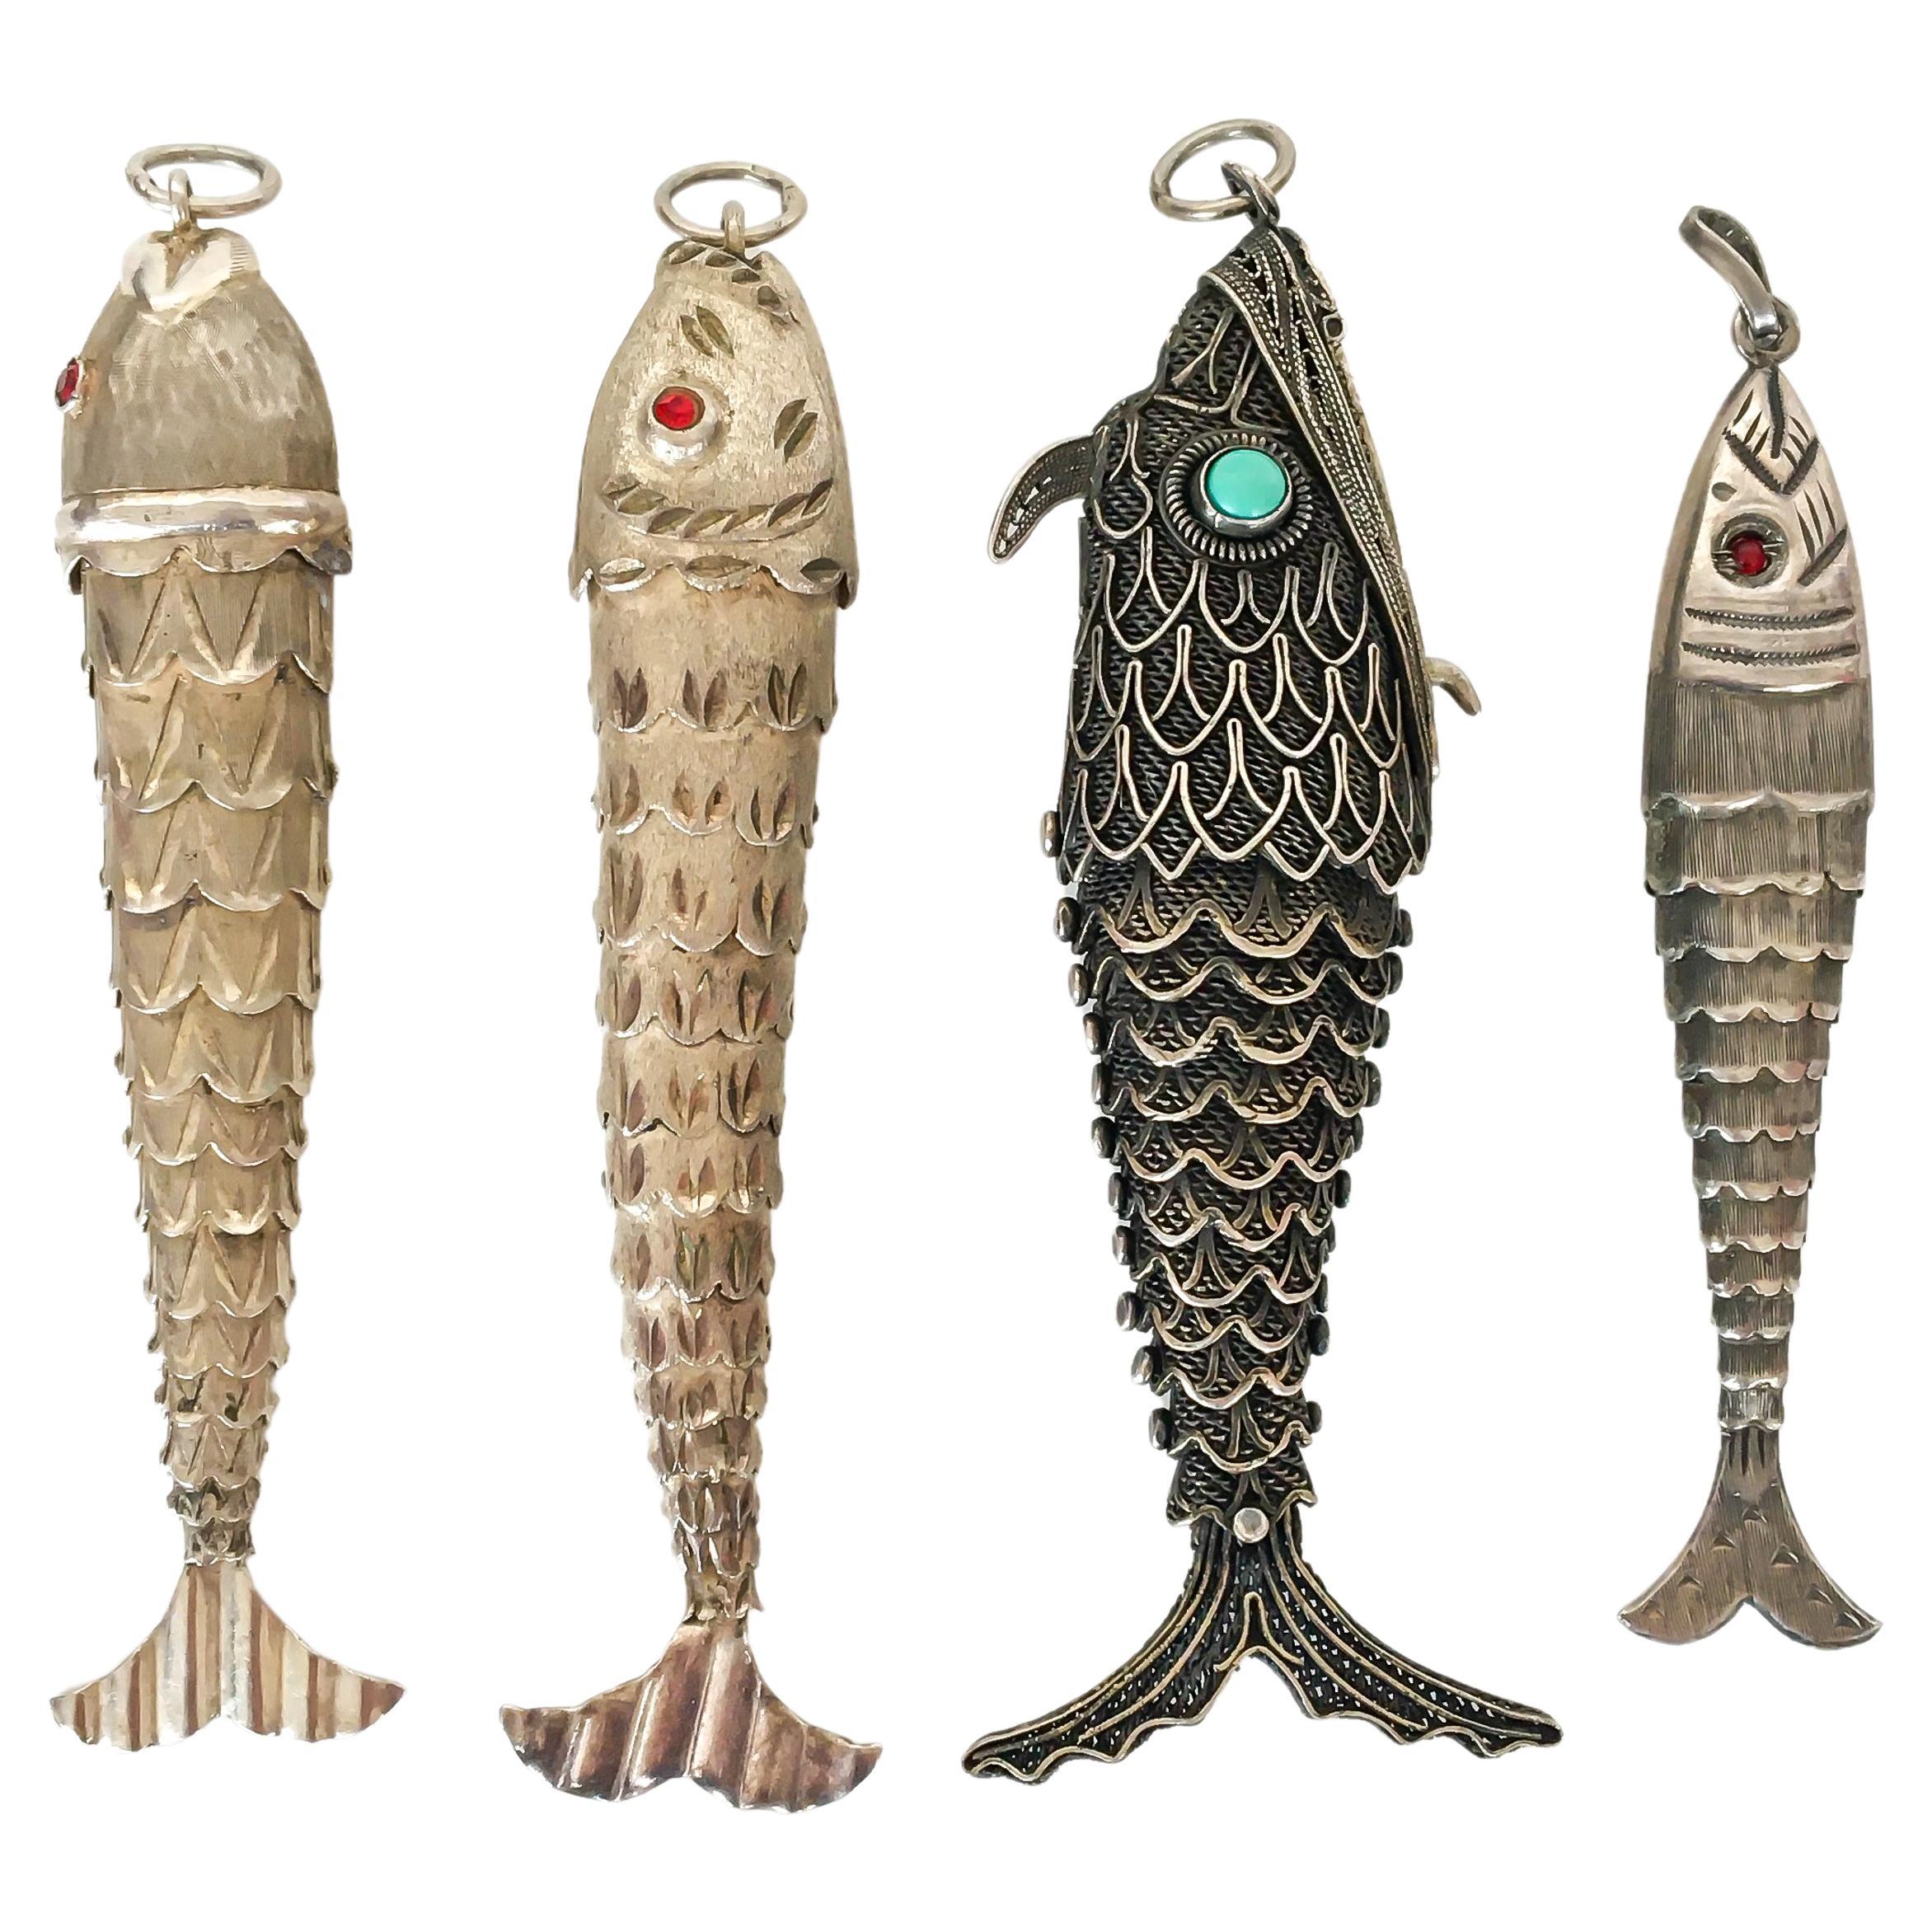 Quel pendentif poisson aimez-vous ? Un pour vous et trois autres à offrir à vos proches ?
Ces quatre pendentifs vintage articulés en forme de poisson en argent sont magnifiques et cherchent une nouvelle maison. Les poissons bougent et remuent leur